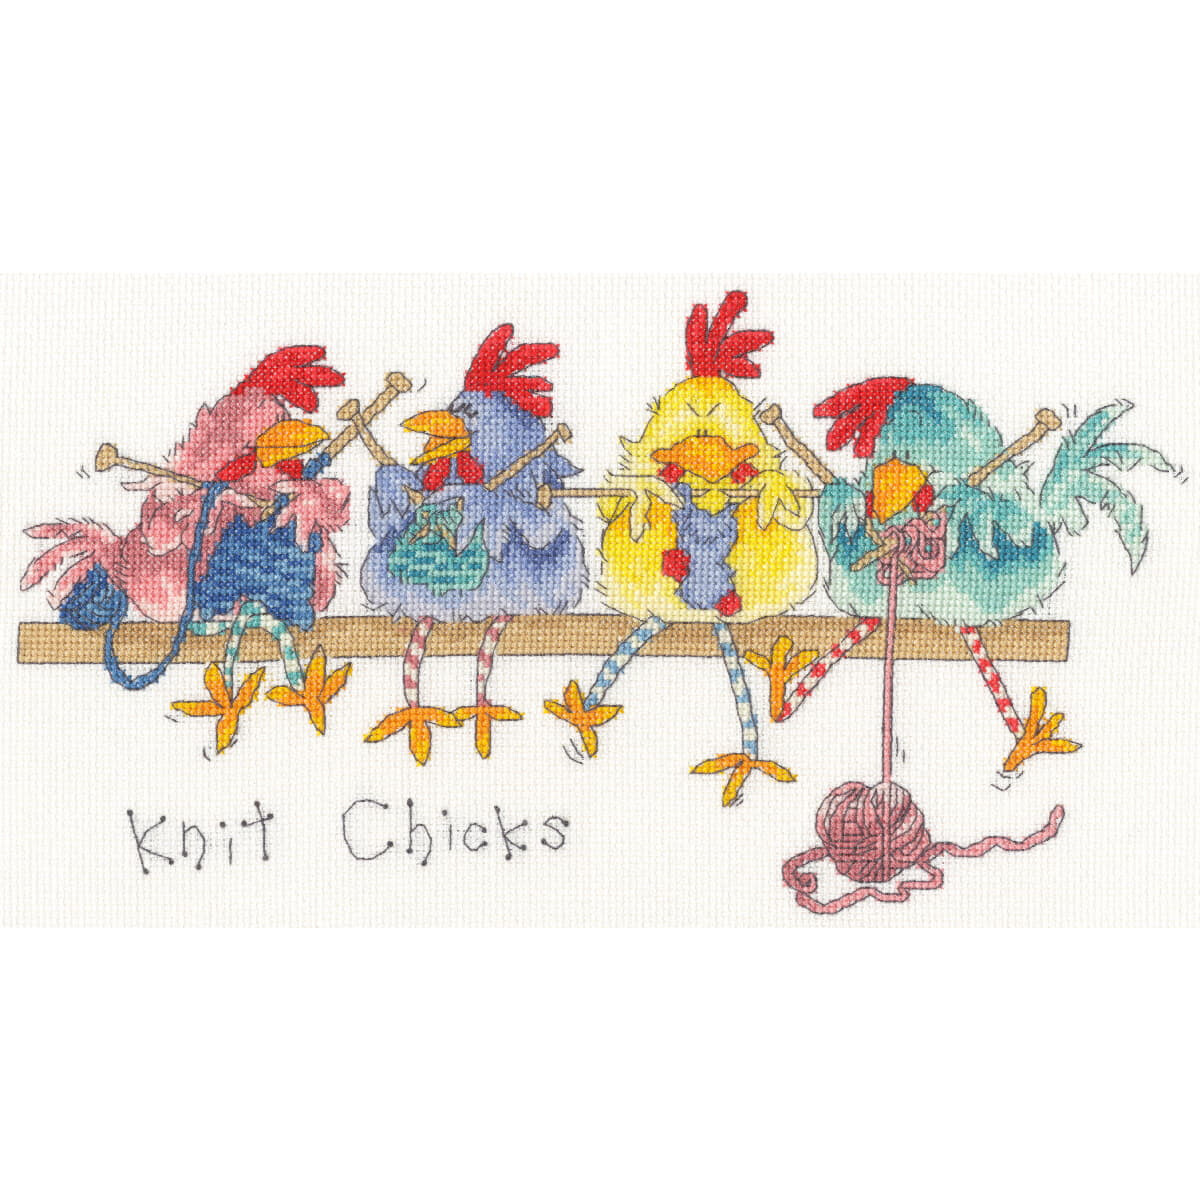 Illustriertes Bild von vier bunten Hühnern, die auf...